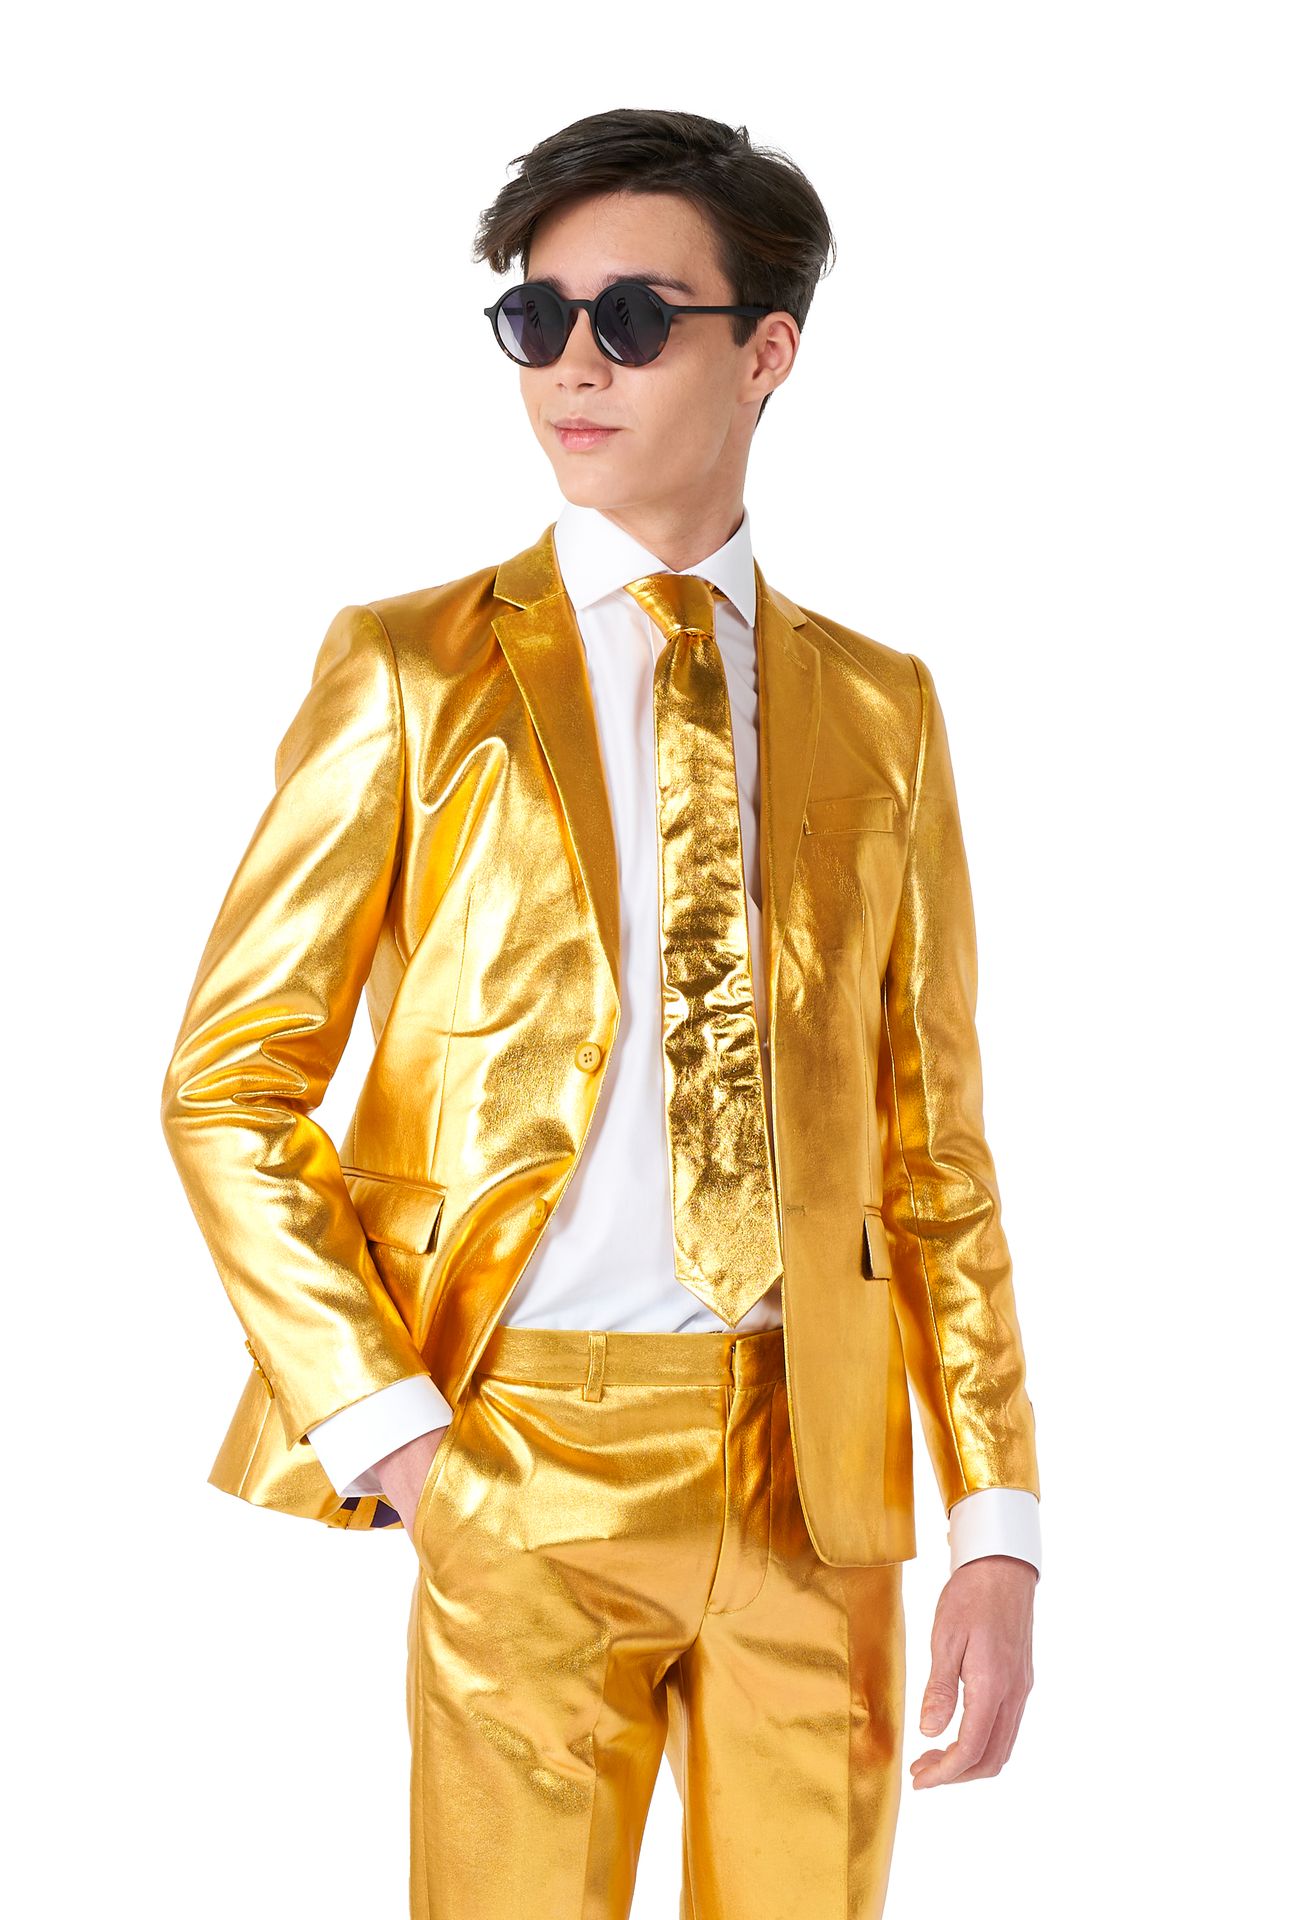 Groovy Gold suit Tiener Jongens Opposuits